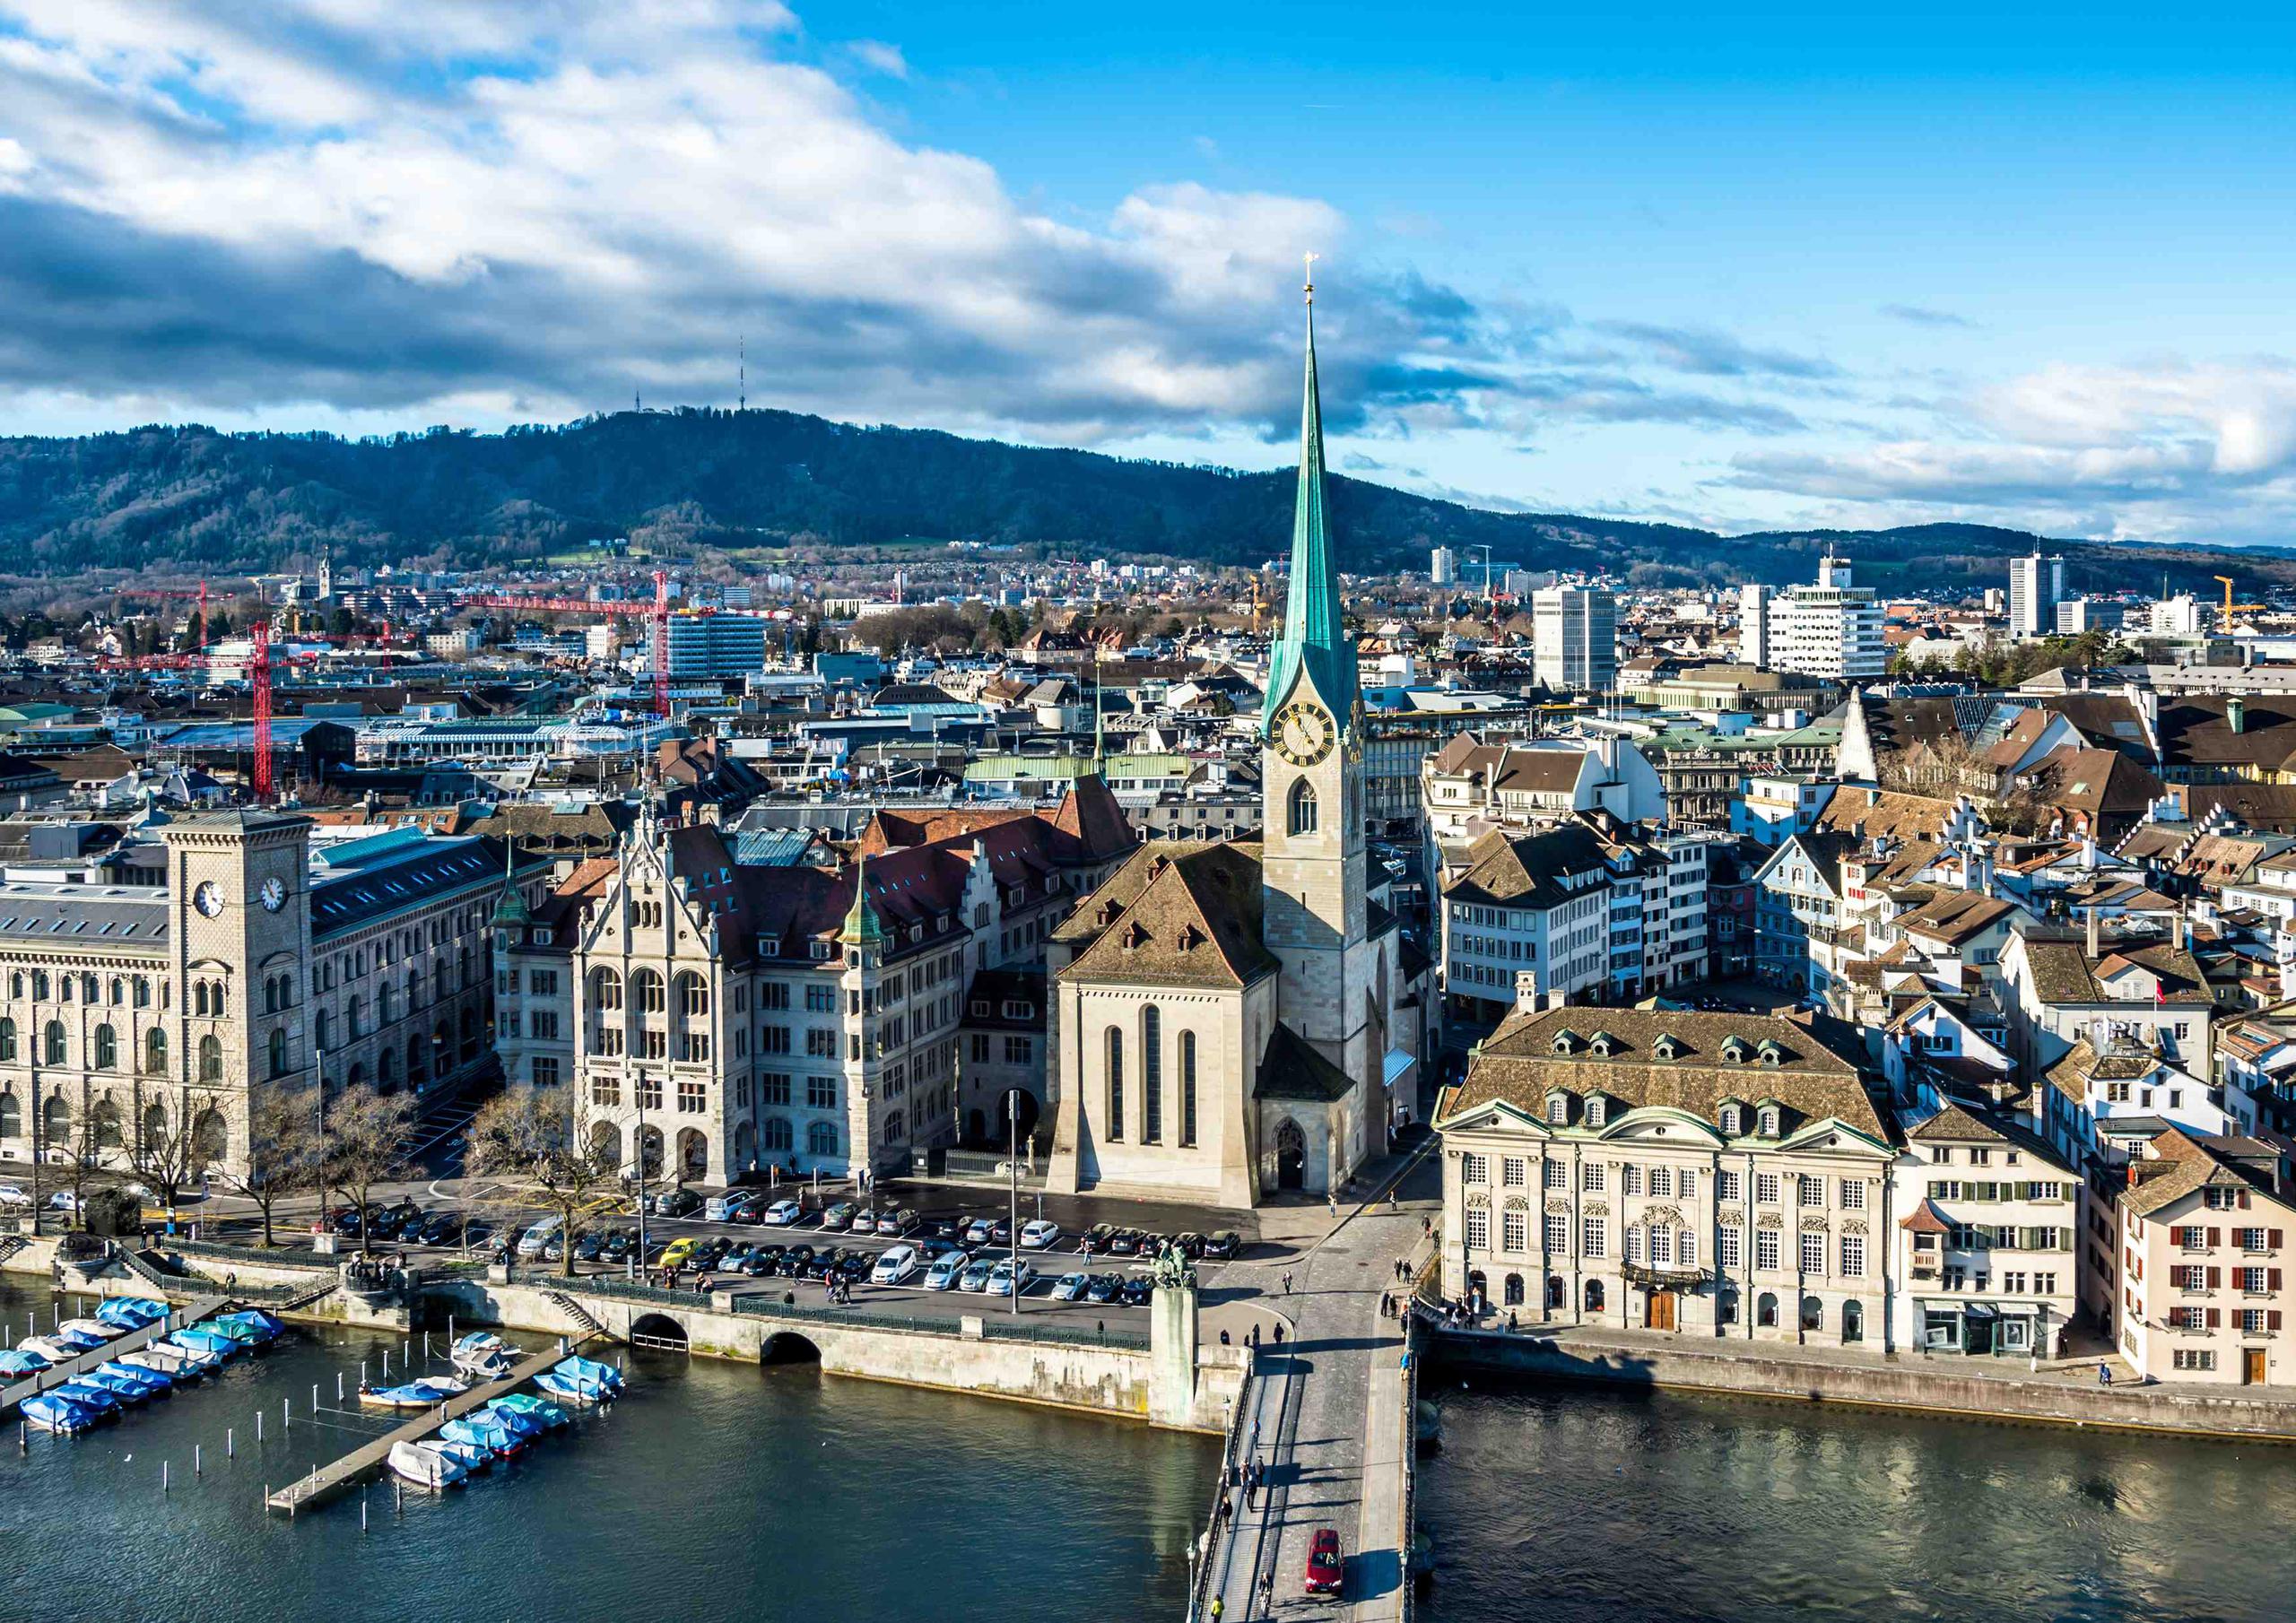 Zúrich, Suiza, ofrece más de 50 museos y de 100 galerías de arte, una vida nocturna muy variada, baños del lago y fluviales en pleno centro, y más en un centro multicultural difícil de obviar. (Foto: Shutterstock.com)